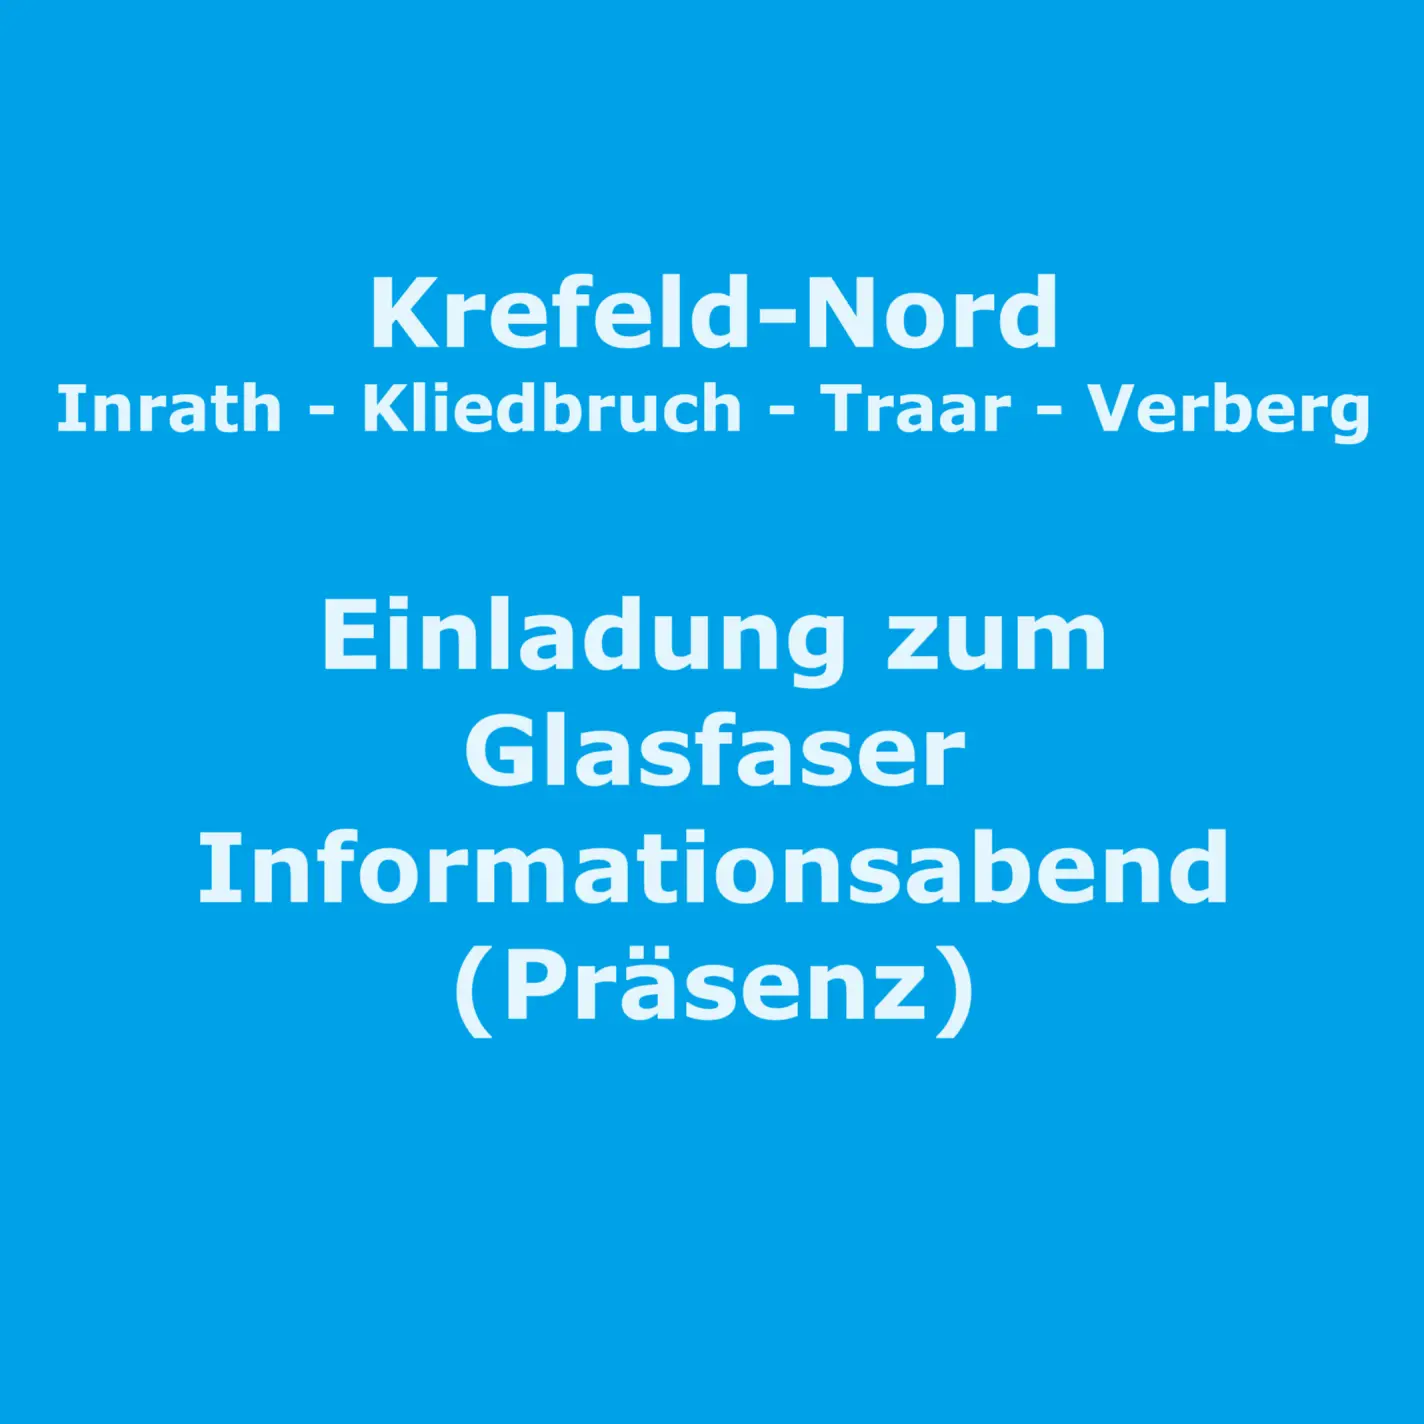 Blaues Bild mit weißer Schrift zum Infoabend in Verberg am 23.4. um 19 Uhr